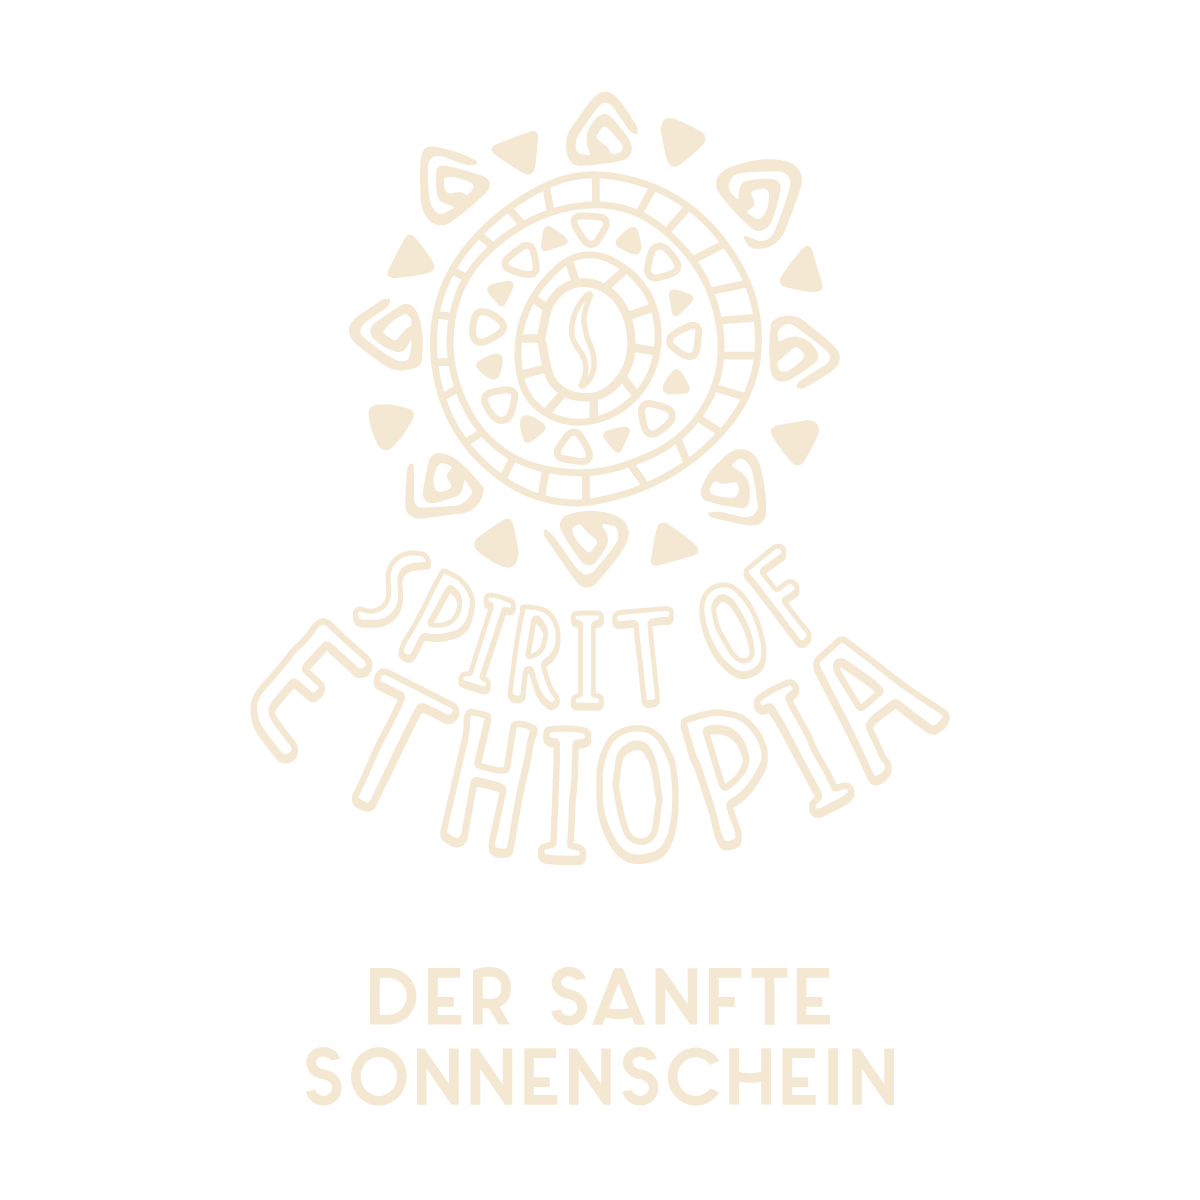 Spirit of Ethiopia Logo - Der sanfte Sonnenschein